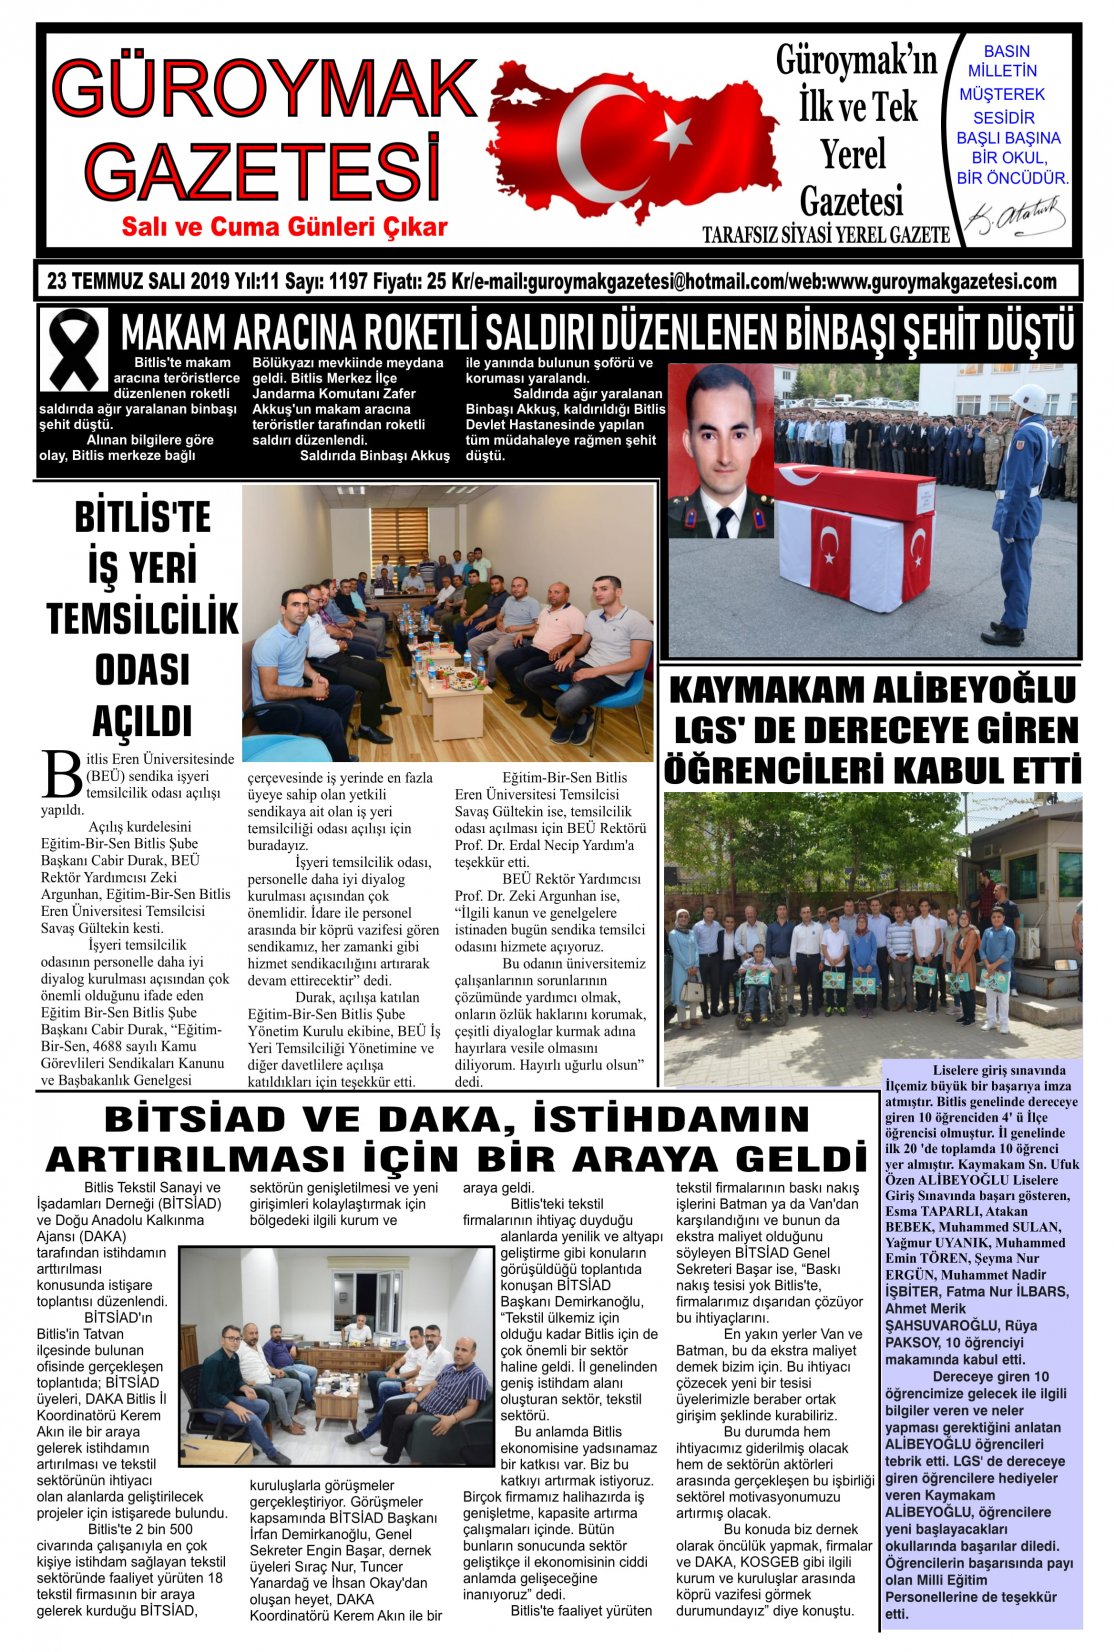 Güroymak Gazetesi 1-1.jpg Sayılı Gazete Küpürü